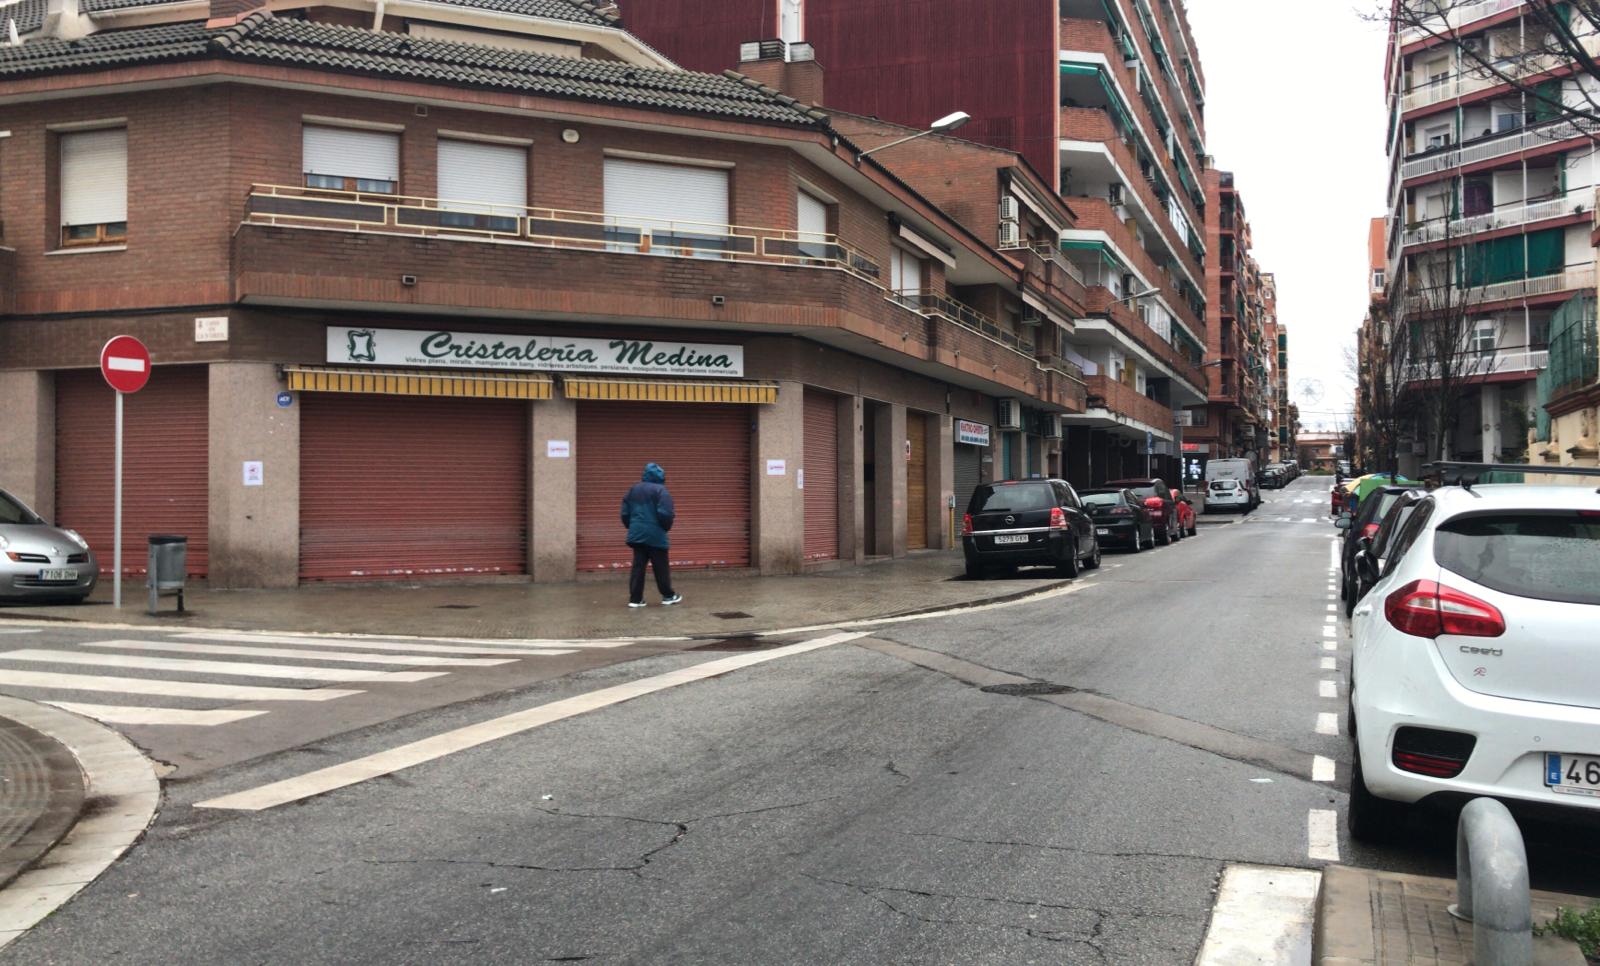 El mal temps i les botigues tancades deixen el centre de Rubí pràcticament buit. FOTO: Andrea Martínez